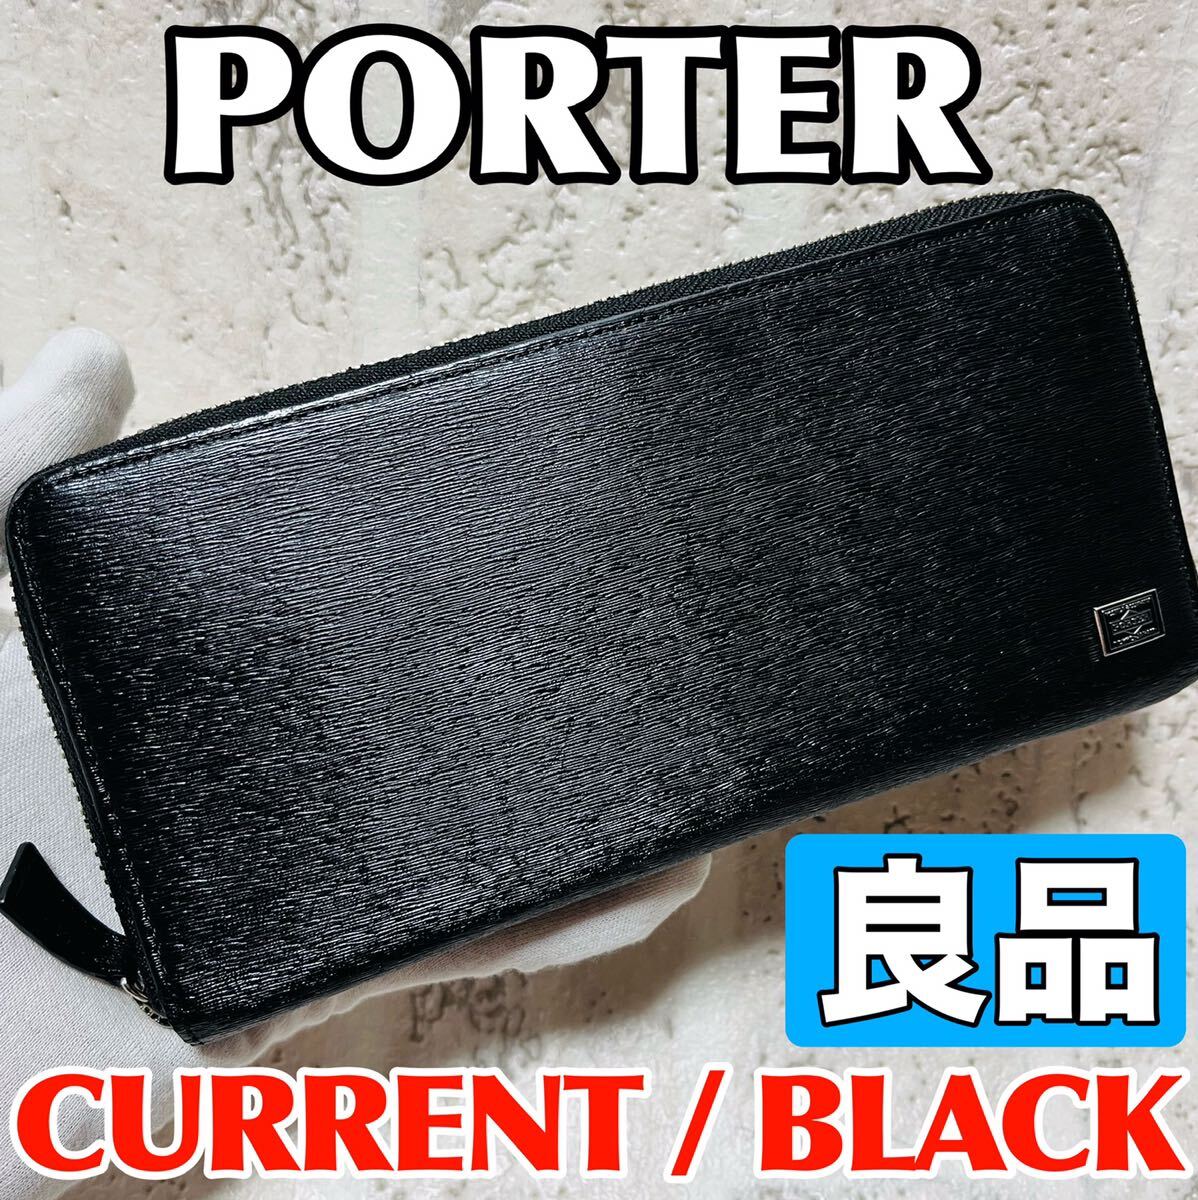 良品 ポーター カレント 吉田カバン 長財布 ラウンドファスナー PORTER CURRENT ブラック メンズ レディース ユニセックス バッグ 8796